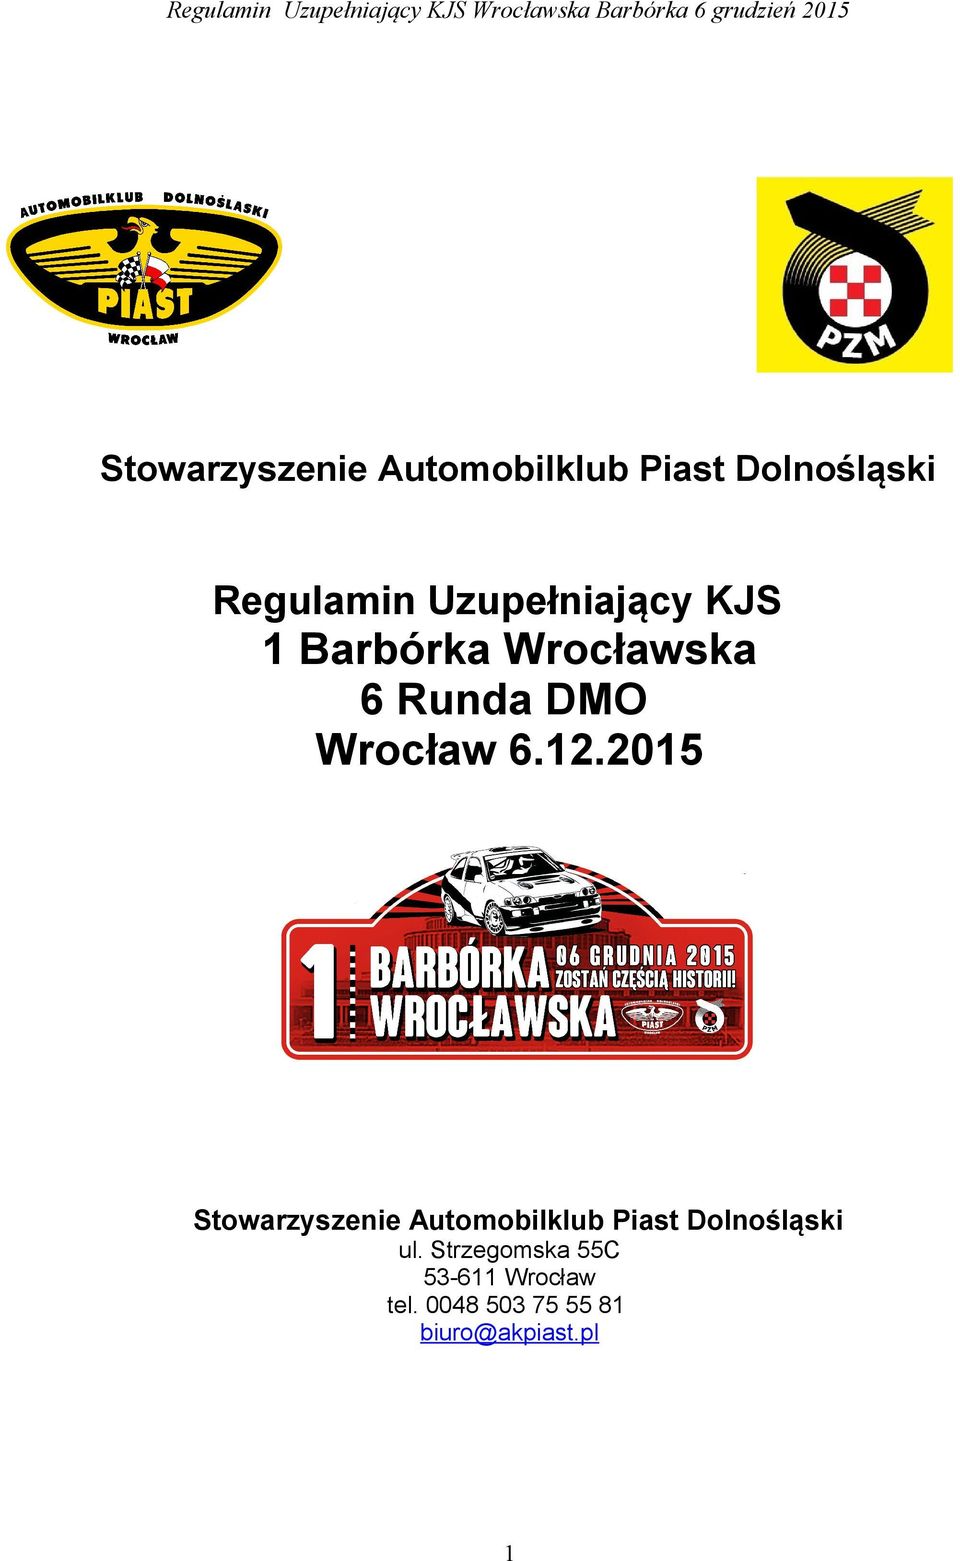 12.2015 Stowarzyszenie Automobilklub Piast Dolnośląski ul.